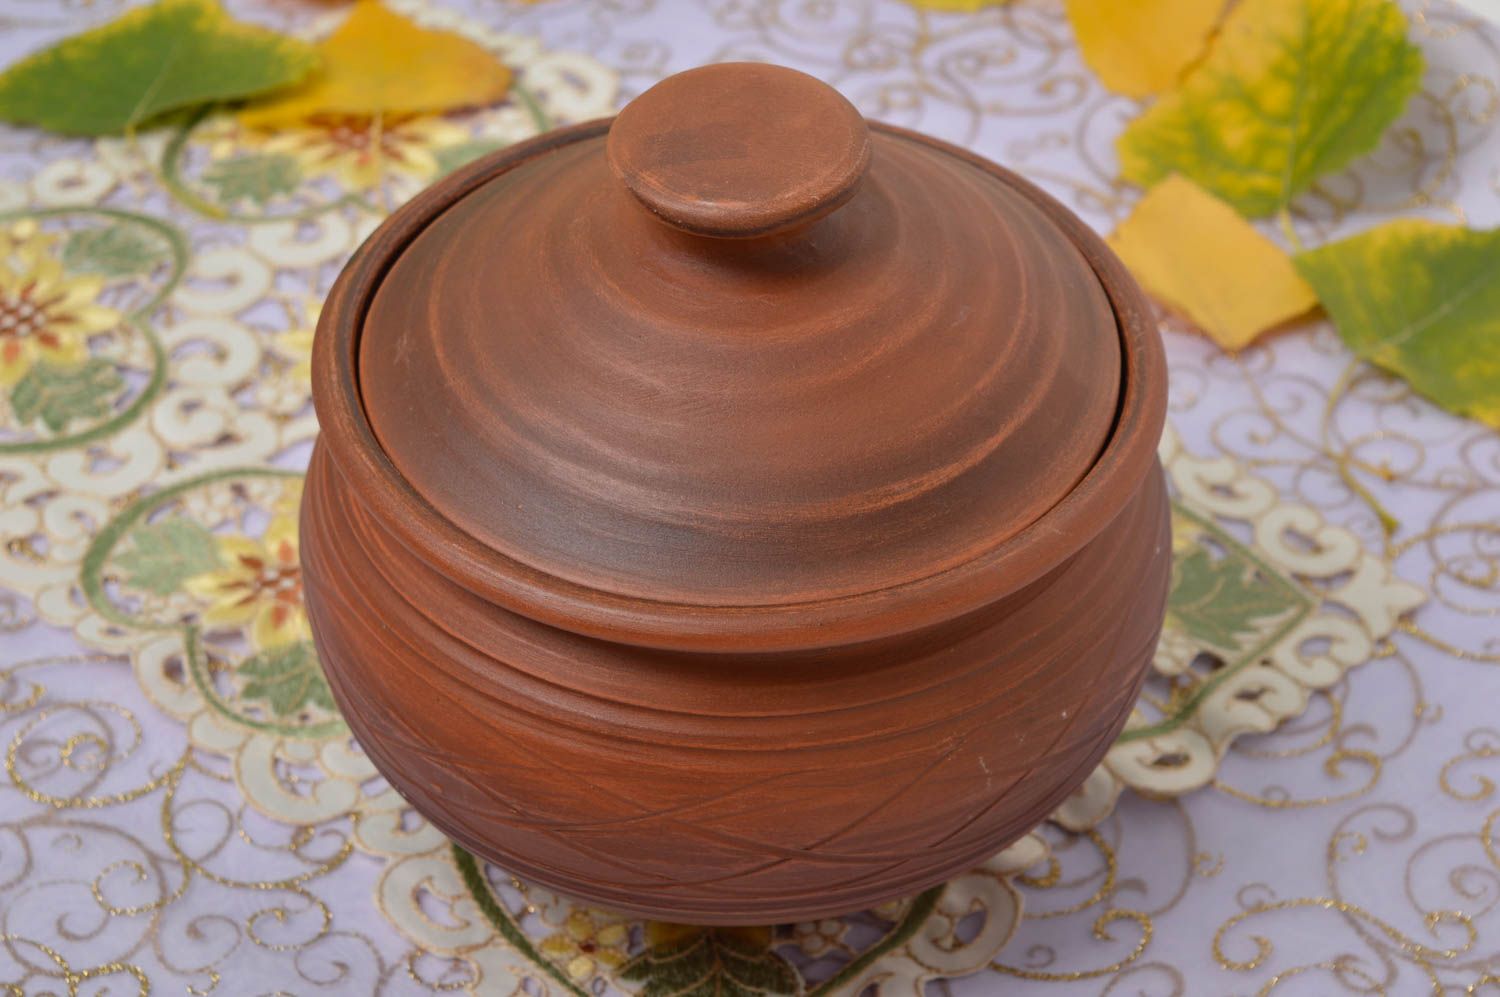 Topf aus Ton handmade Deko für Küche Keramik Geschirr im Öko Style schön foto 1